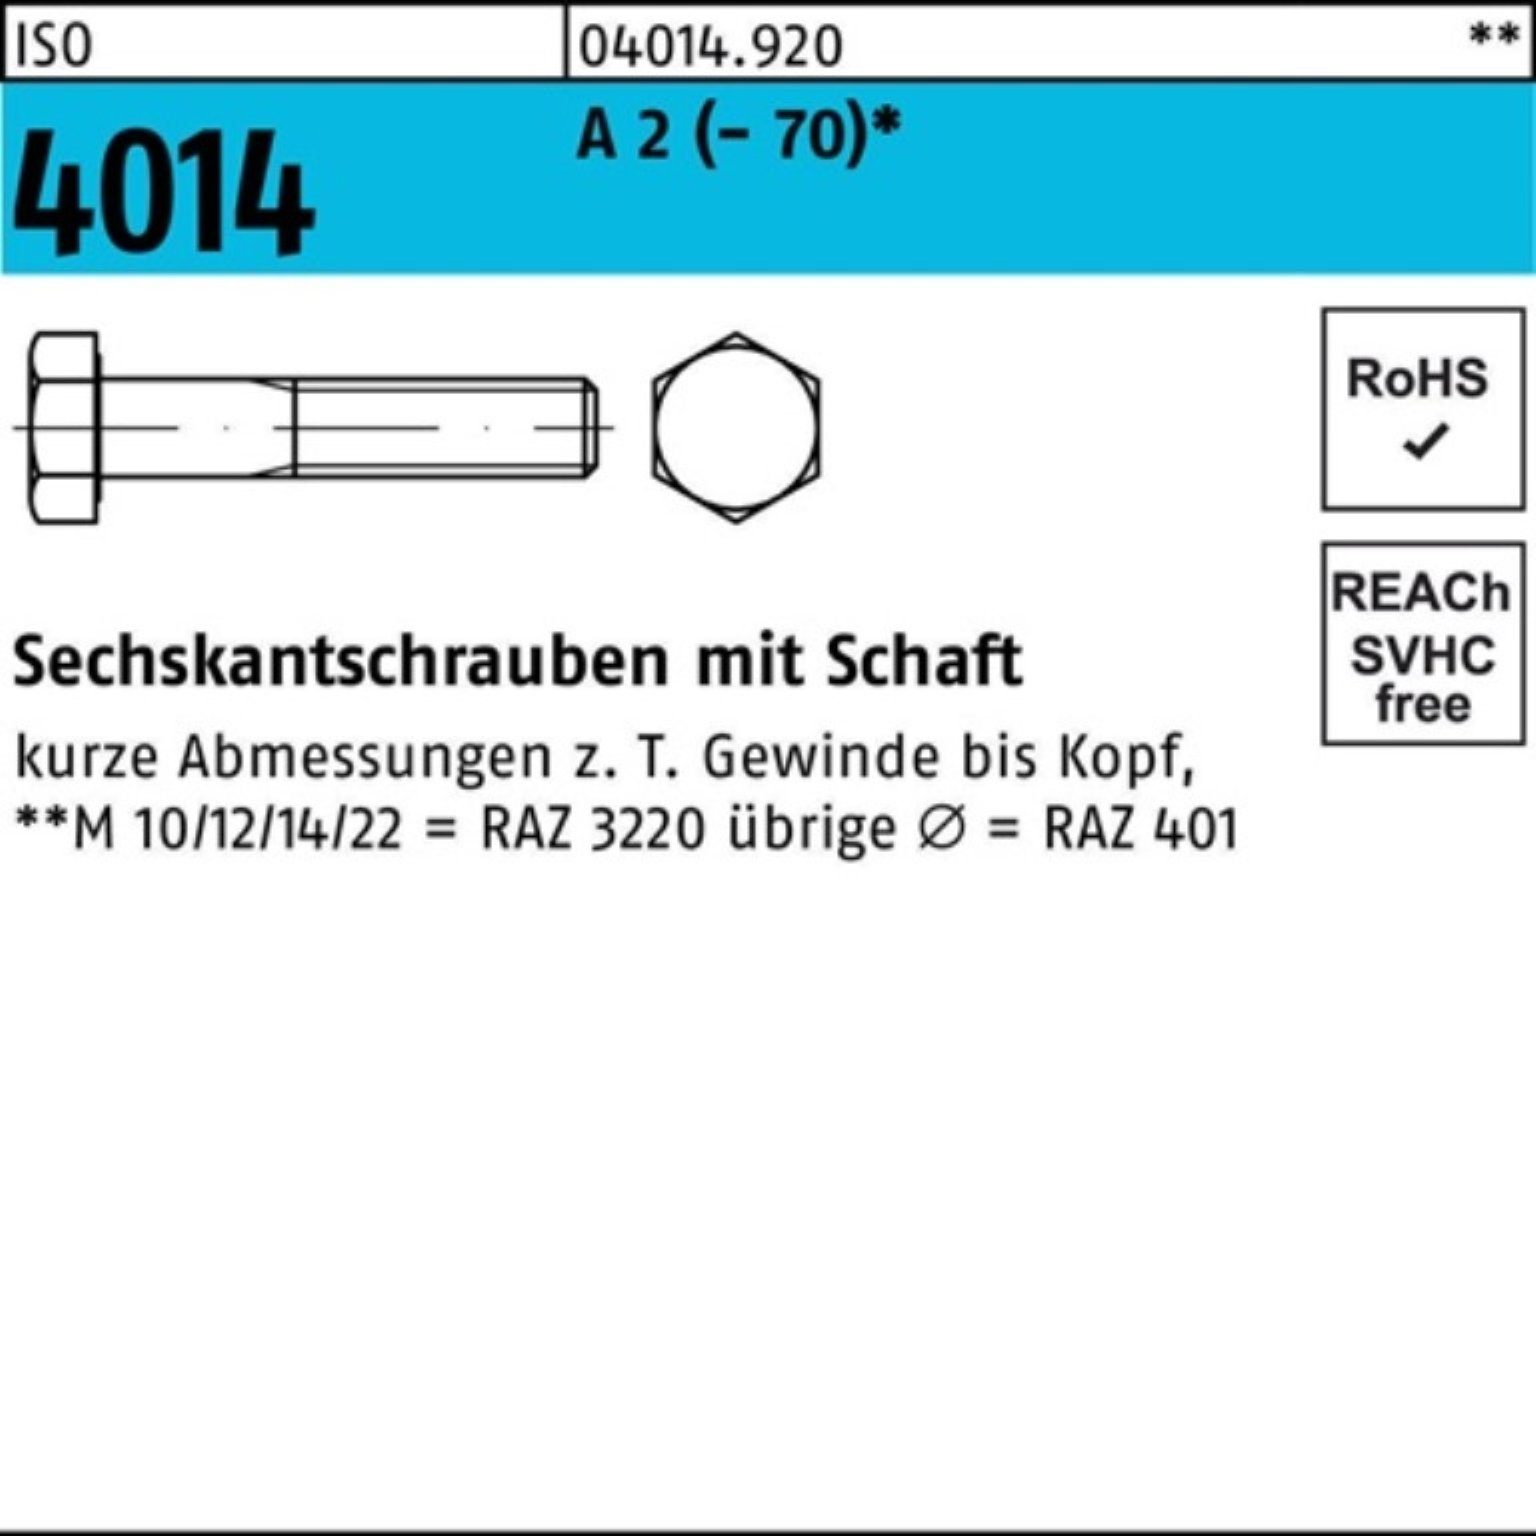 Bufab Sechskantschraube 100er Pack Sechskantschraube ISO 4014 Schaft M6x 35 A 2 (70) 100 St